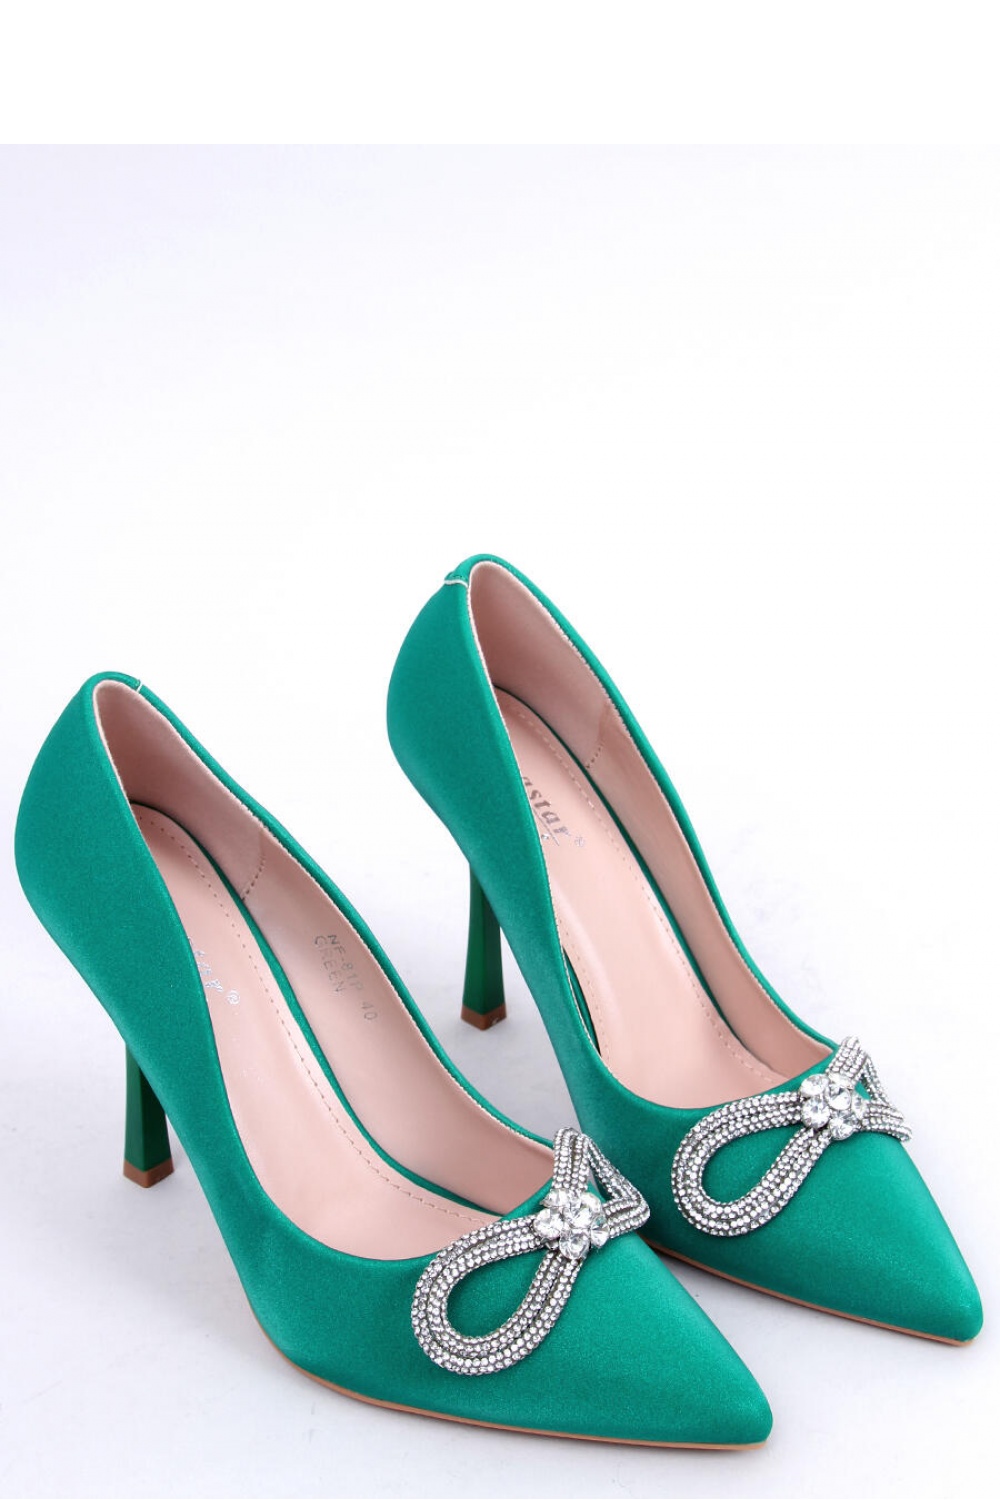 High heels model 172825 Inello